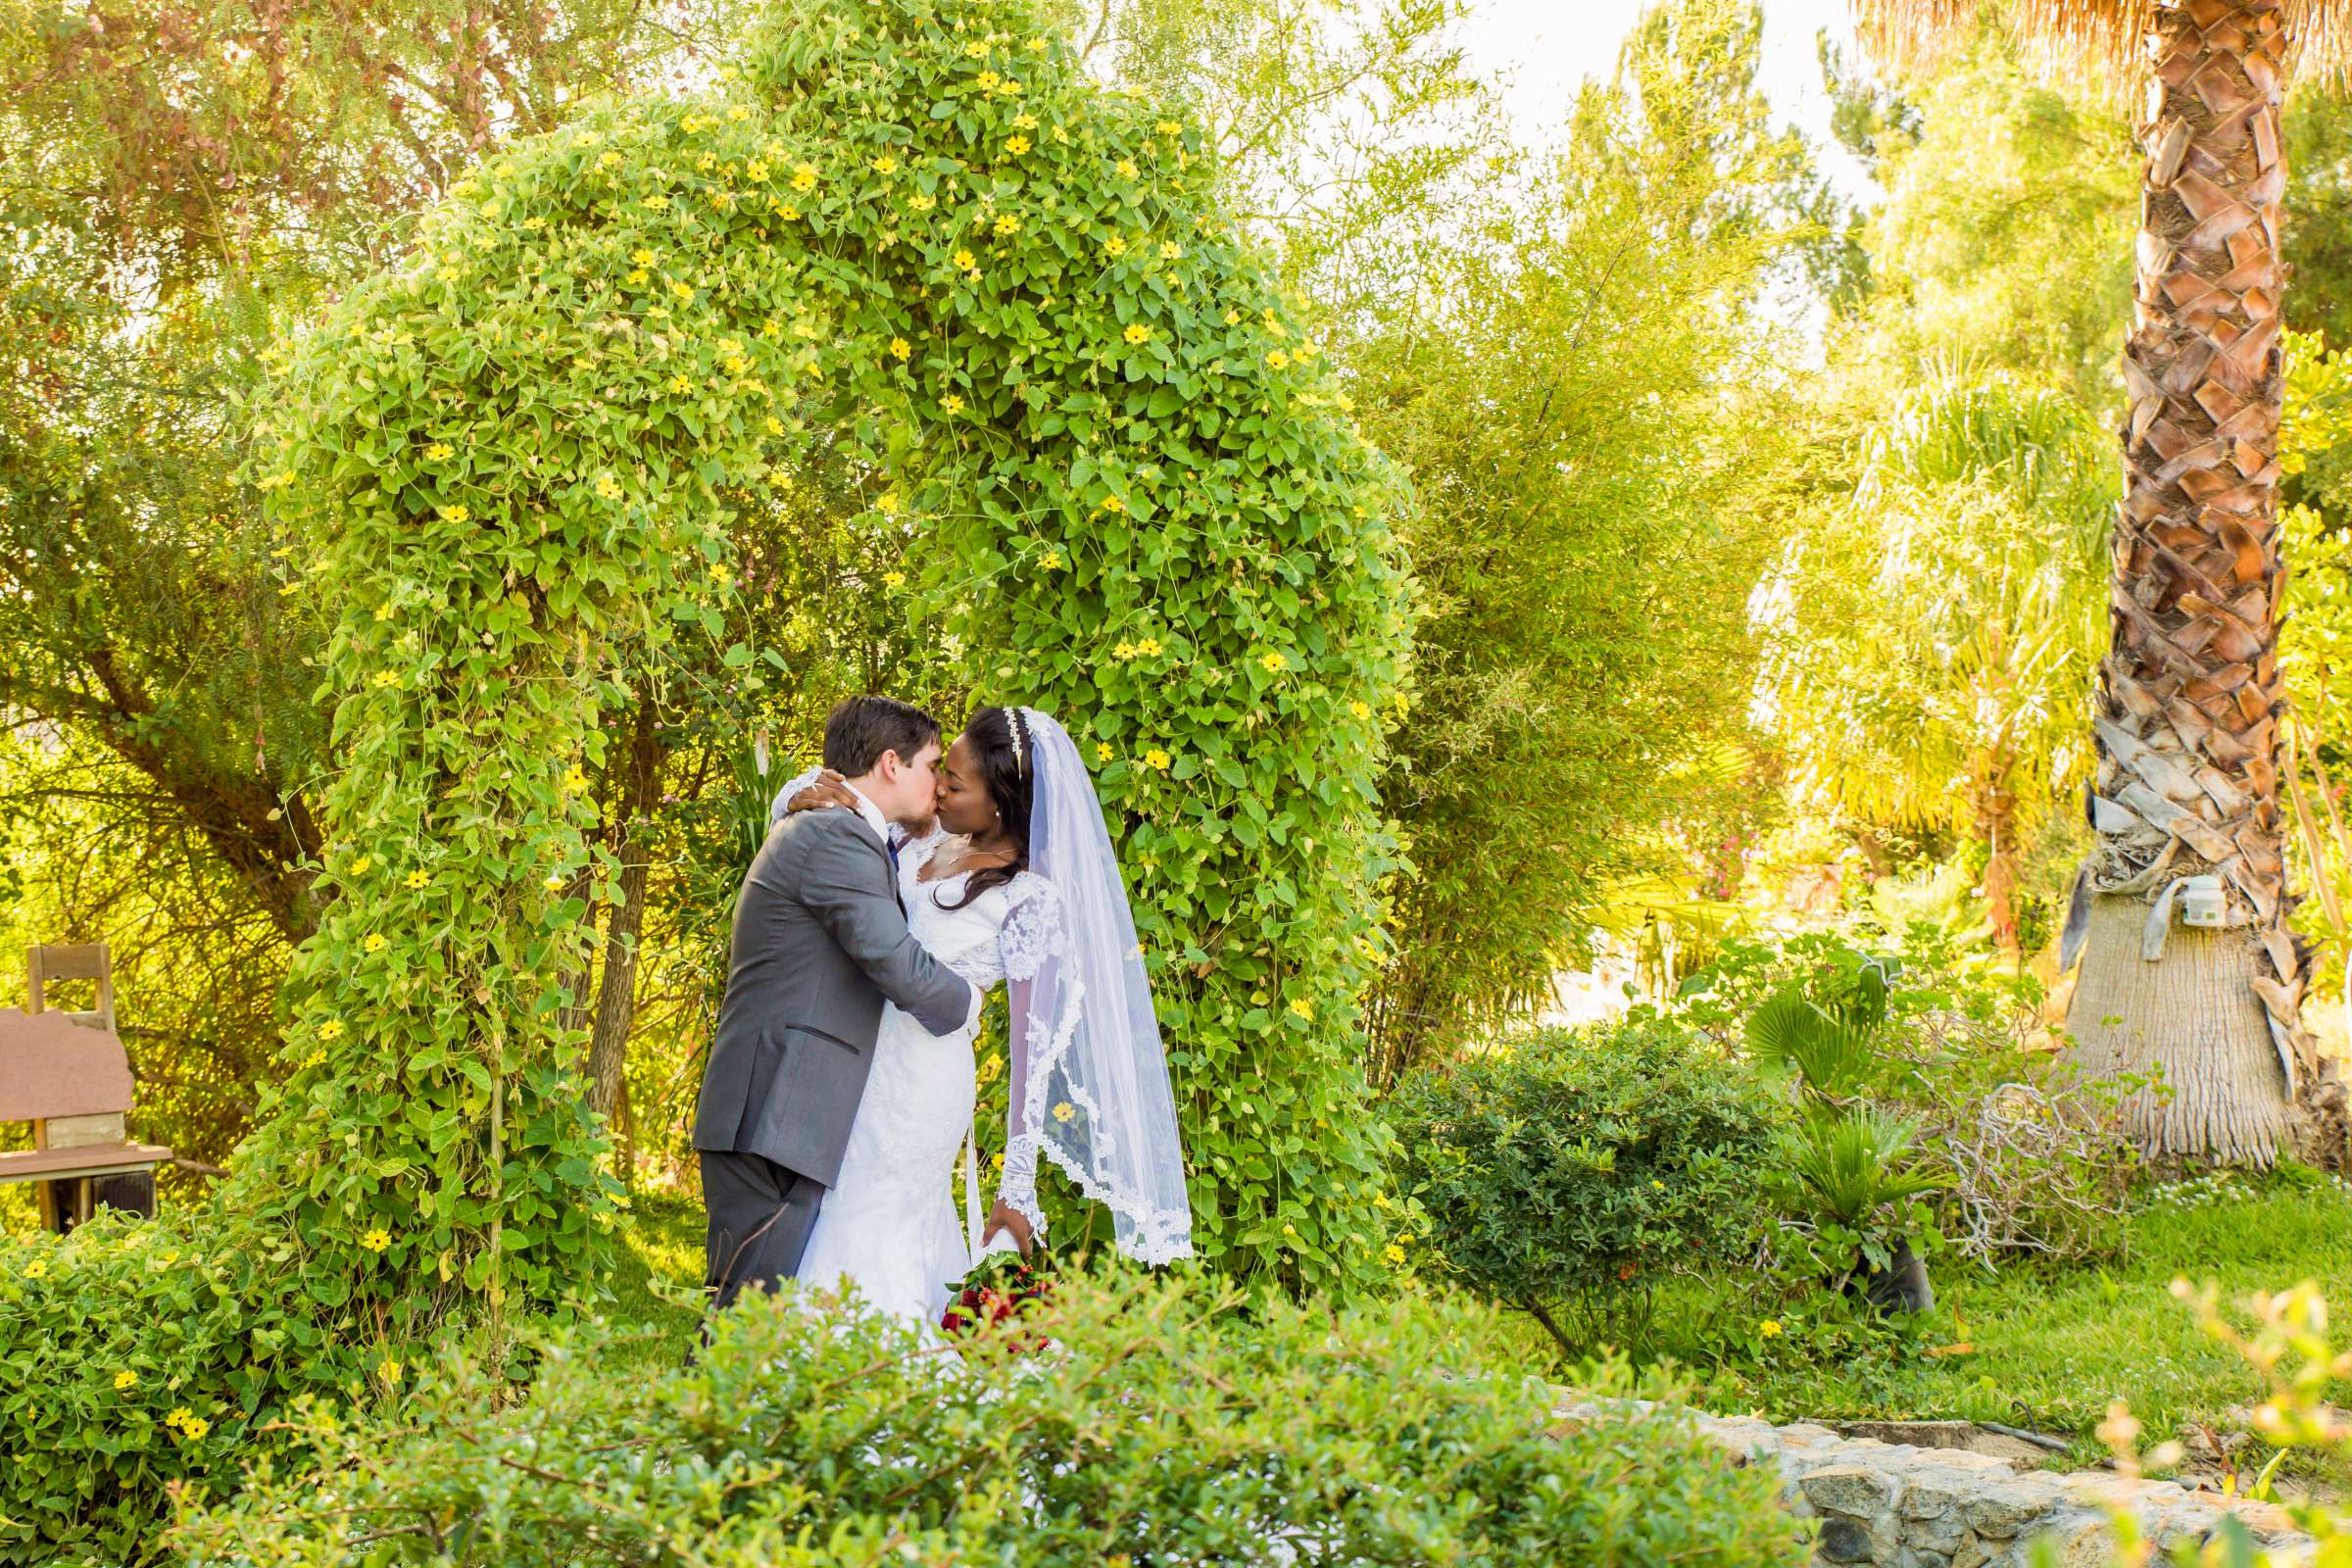 Fallbrook Hacienda Wedding, Elizabeth and Nicholas Wedding Photo #425264 by True Photography